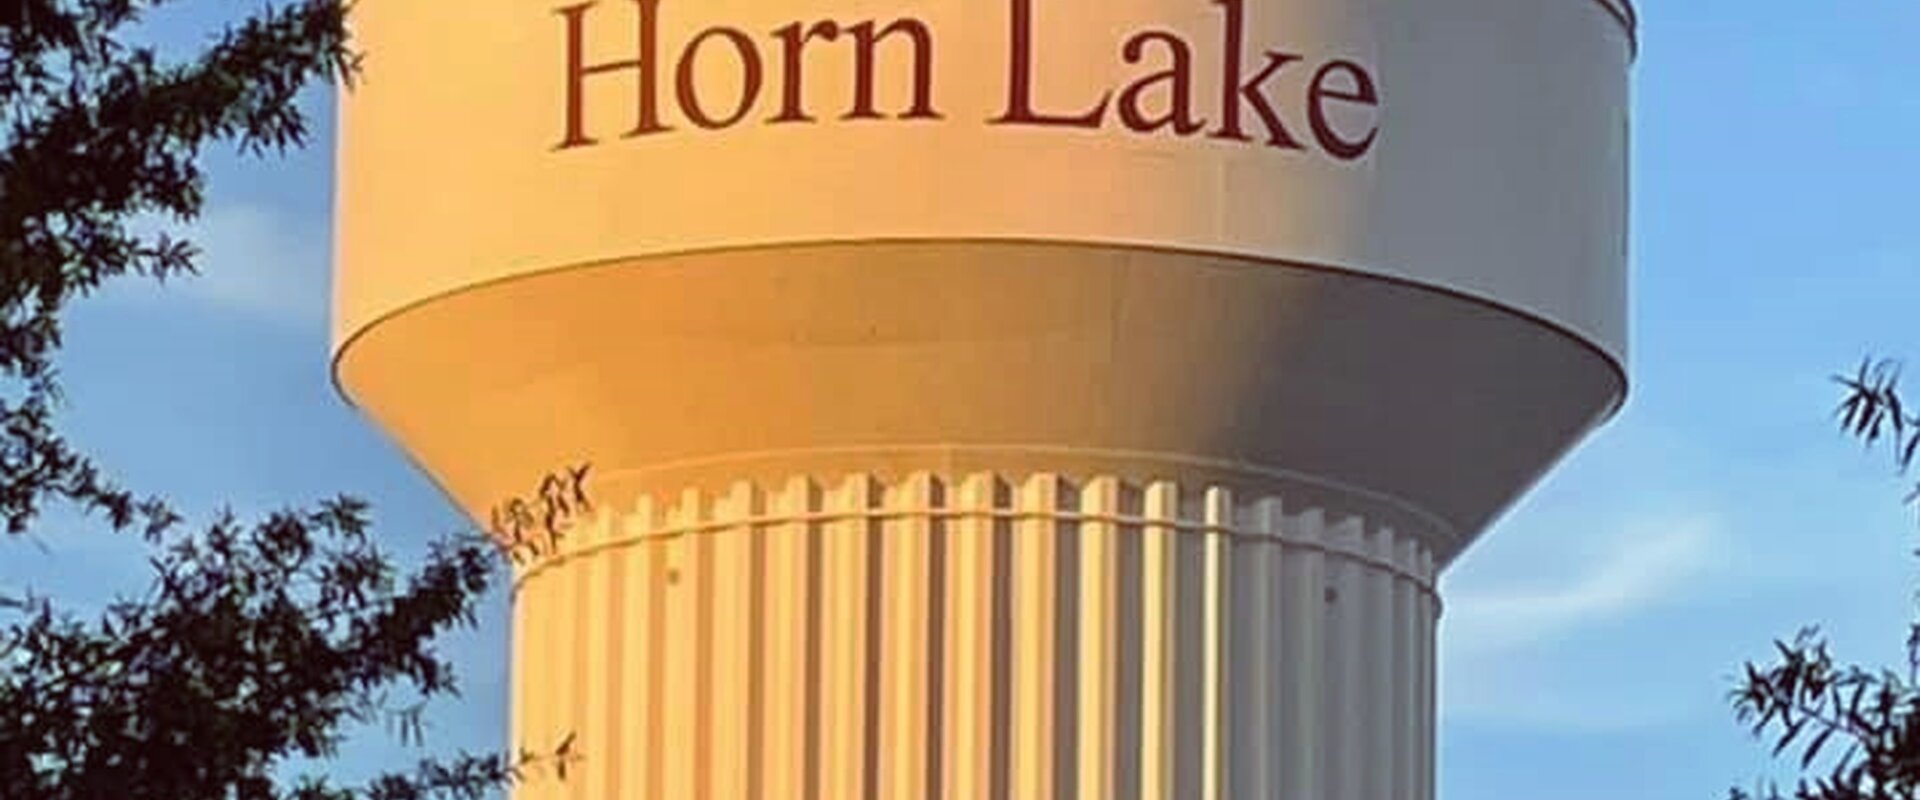 We buy houses Horn Lake